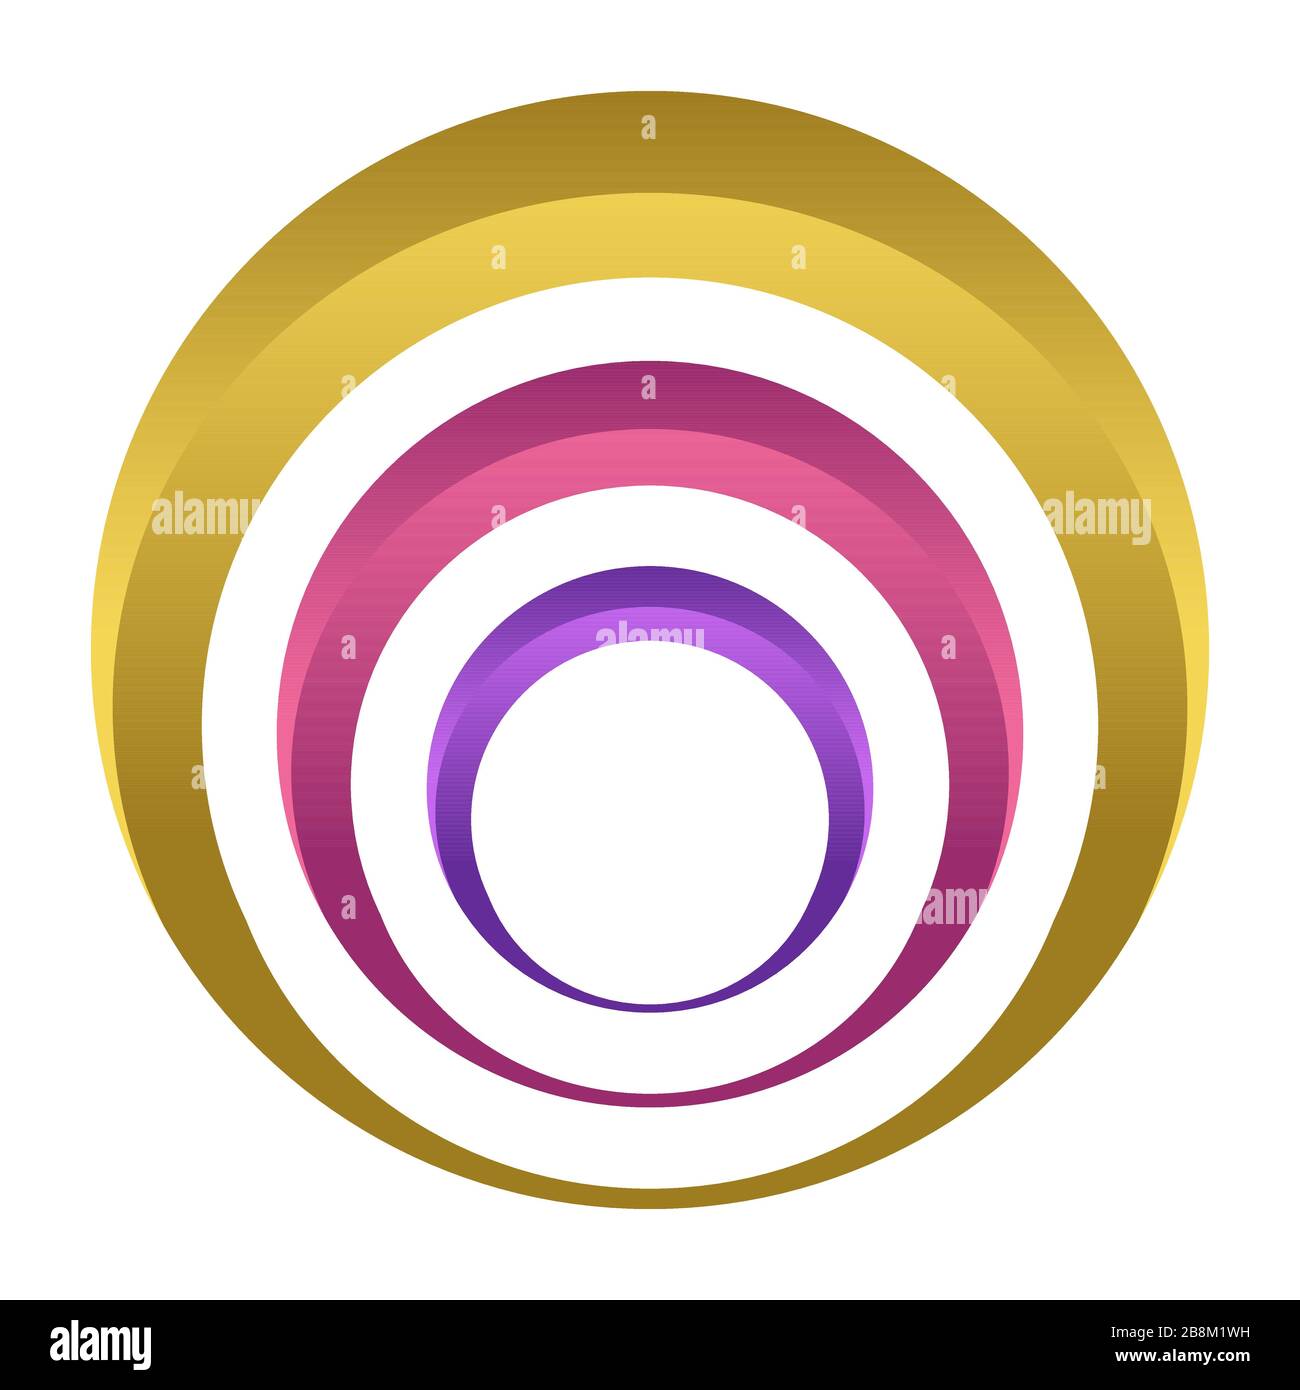 Abstrakte bunte Kreise. Mehrfarbige Ringe isoliert auf weißem Hintergrund. Konzentrische Volumenkreise, Ringe. Abstrakte Designelemente. Infografik. Stock Vektor